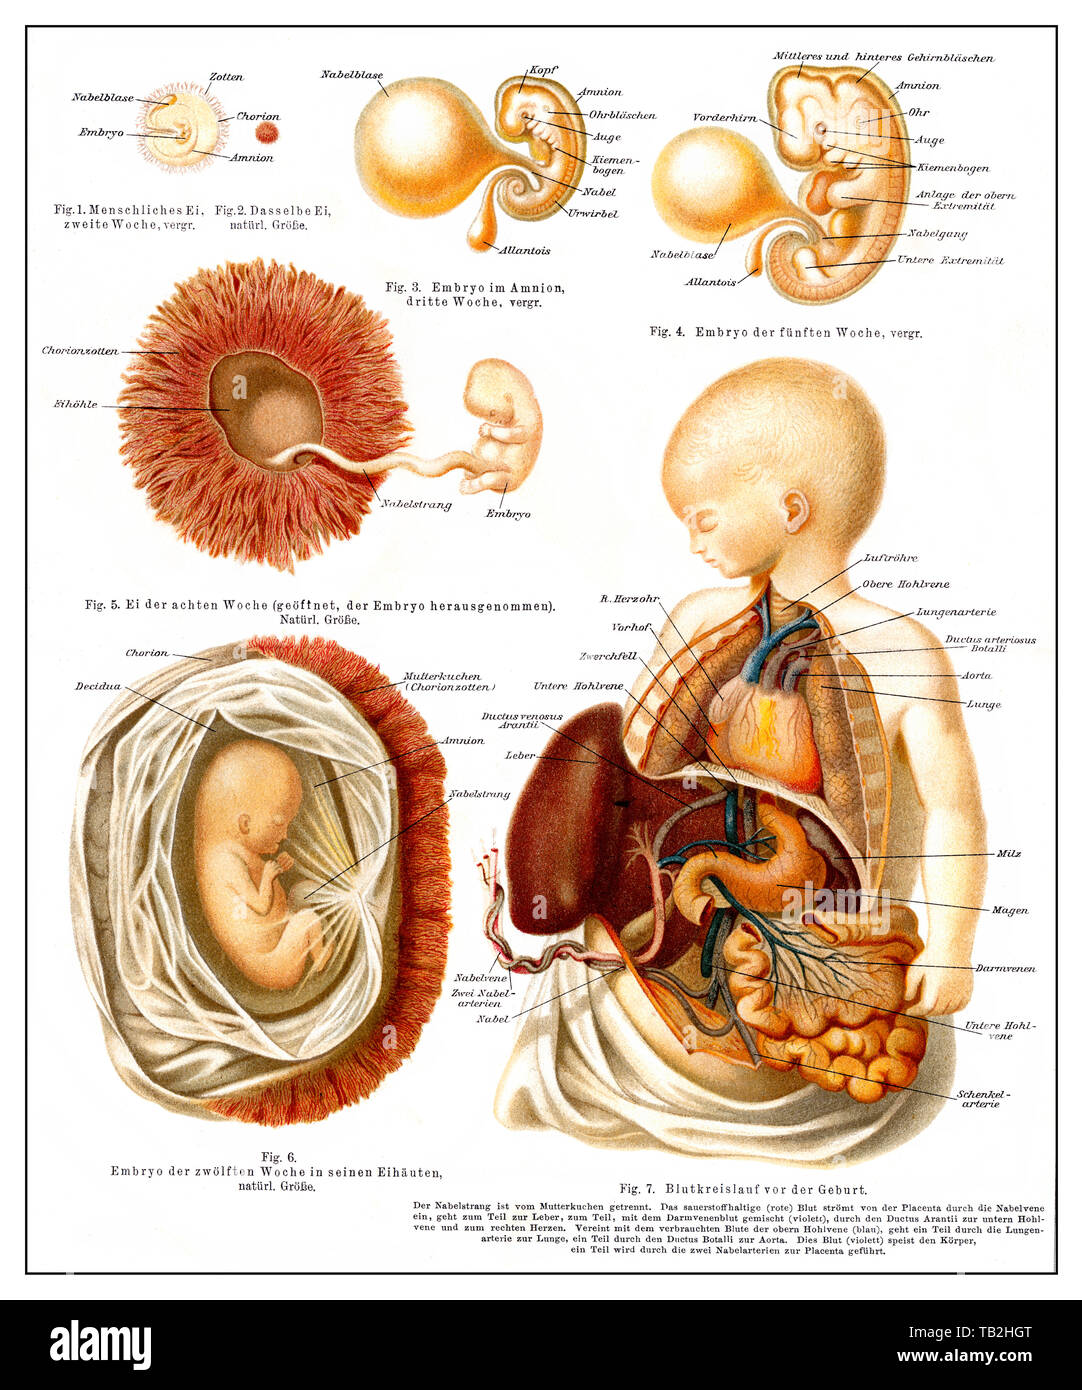 Graphical depiction of the human development from egg to embryo, die Entwicklung des Menschen vom Ei bis zum Embryo, aus Meyers Konversations-Lexikon, 1889 Stock Photo